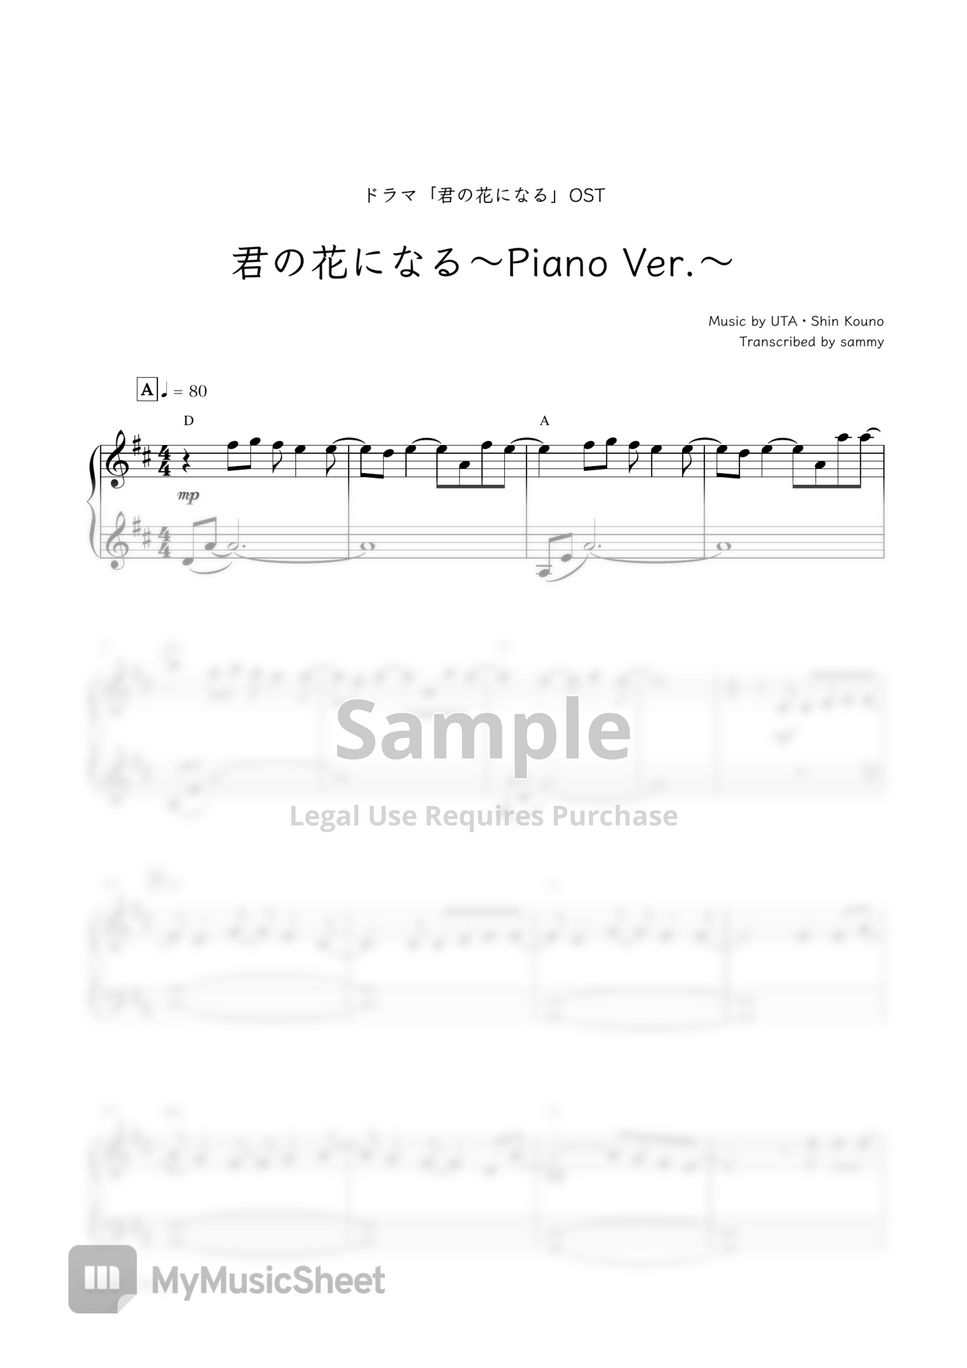 ドラマ『君の花になる』OST - 君の花になる〜Piano Ver.〜 (君の花になる) by sammy